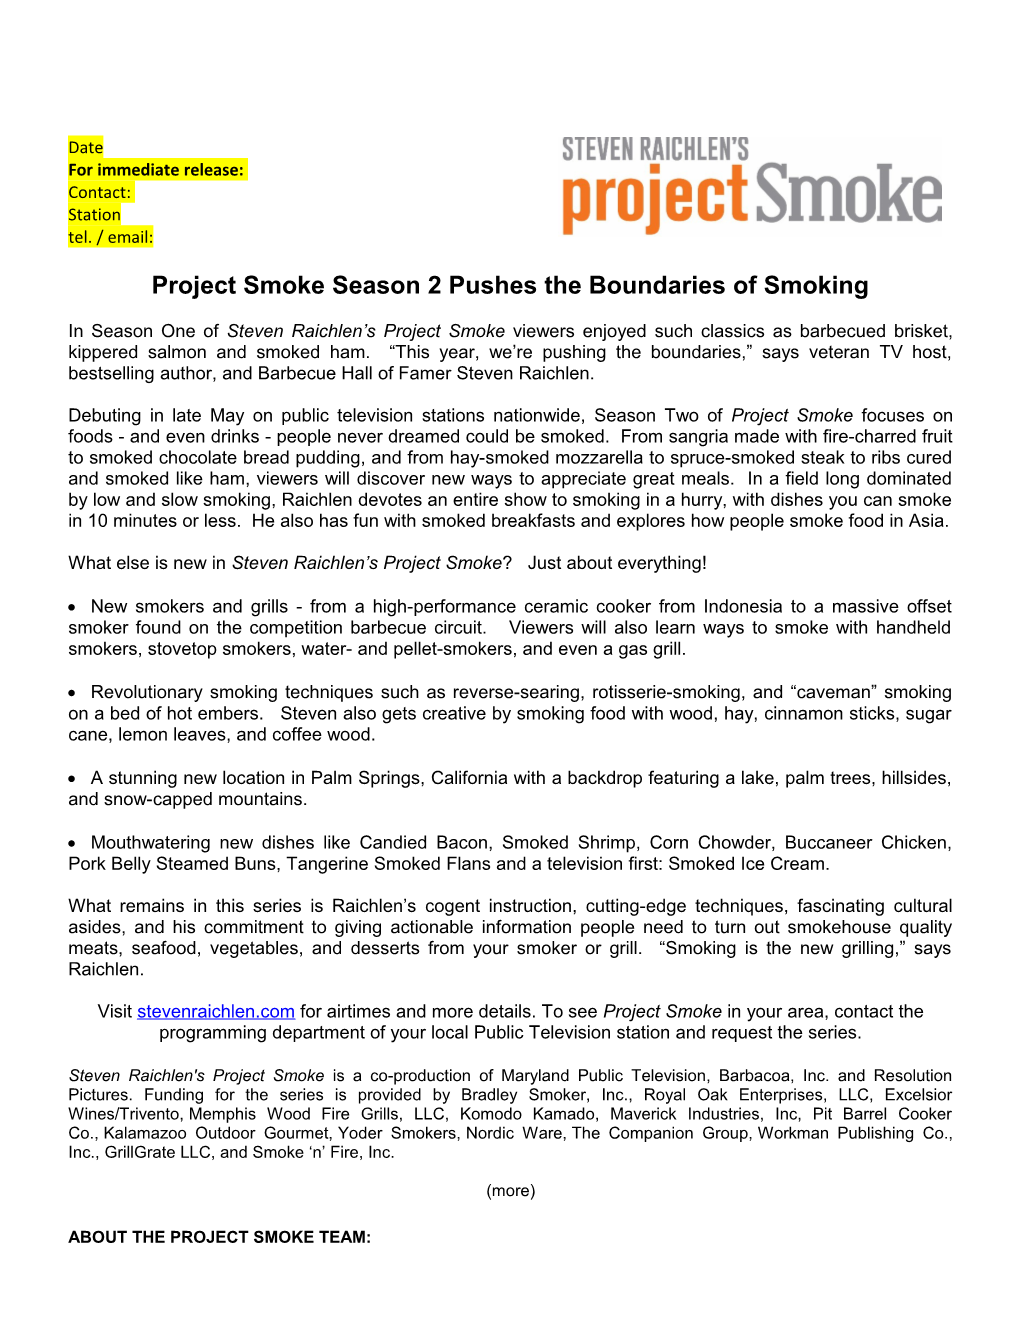 Project Smoke Season 2 Pushes the Boundaries of Smoking